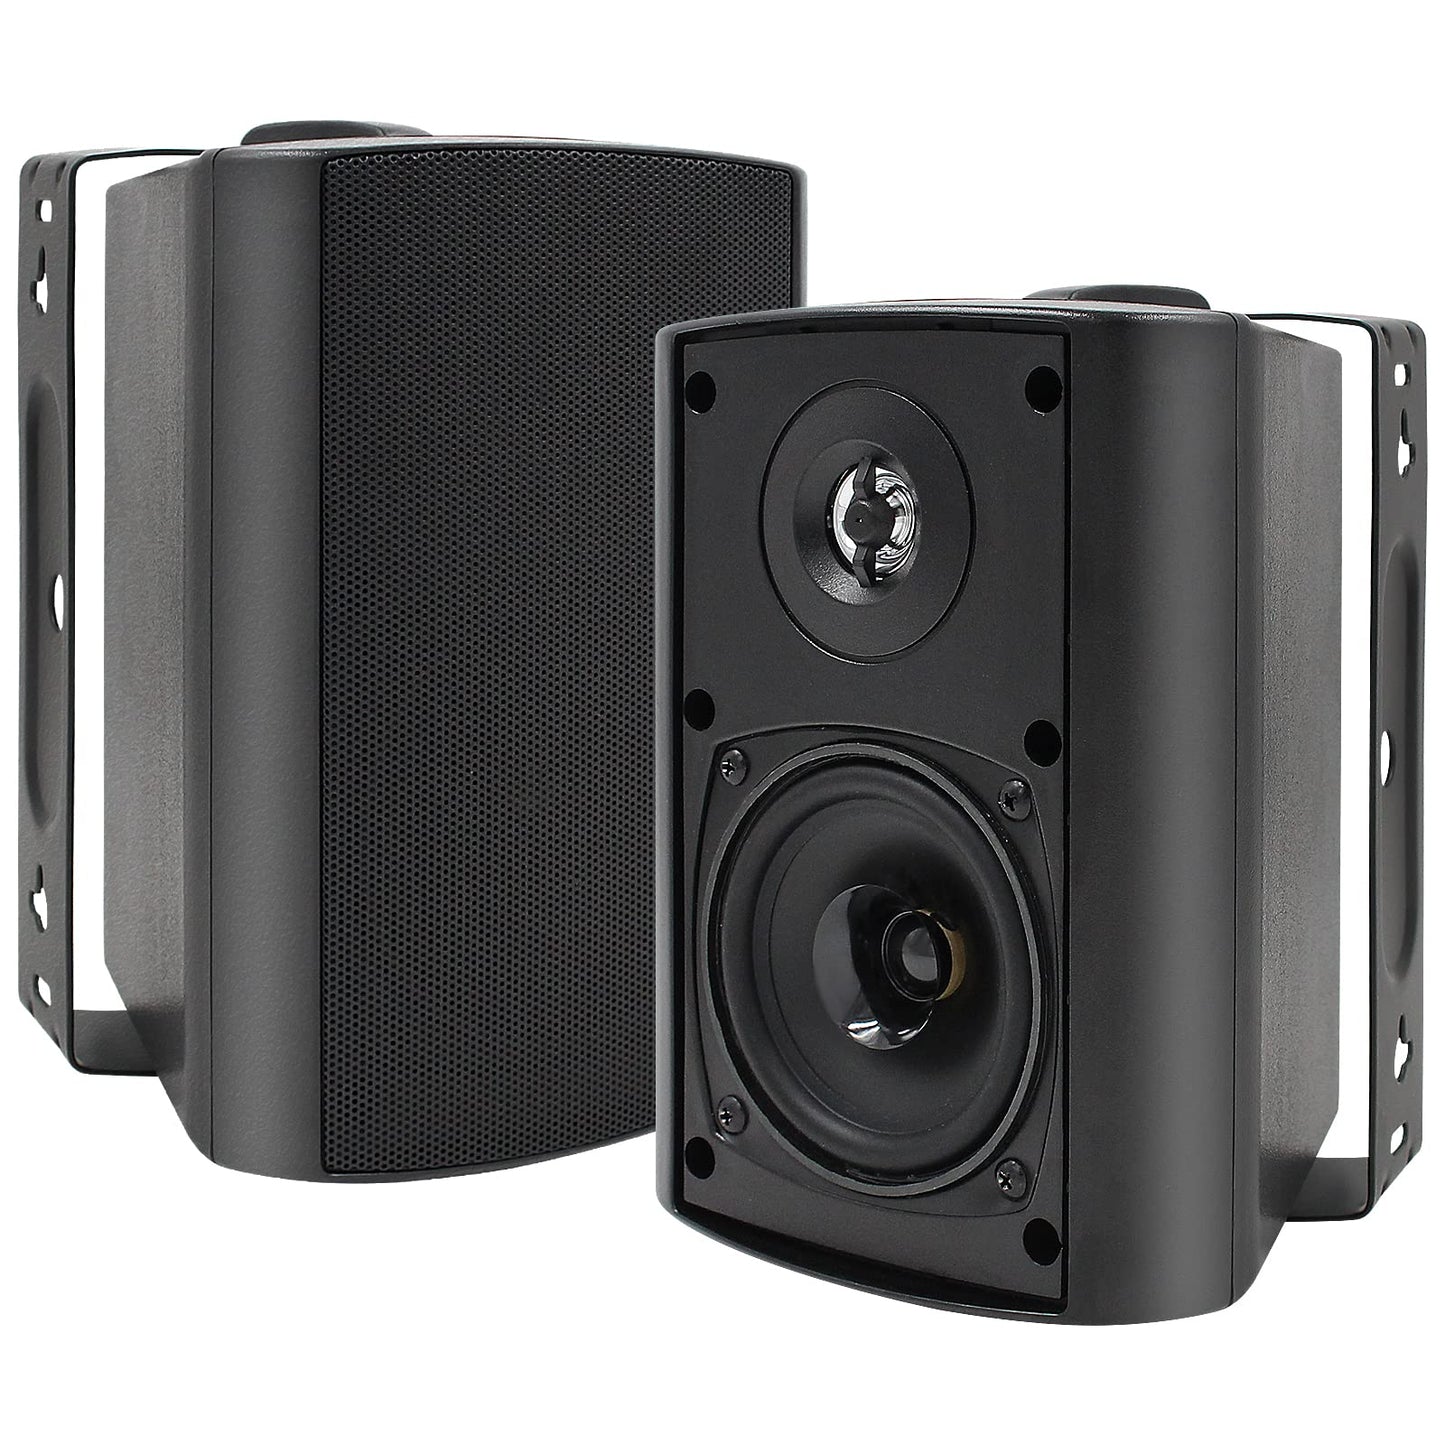 Herdio wall-mounted Bluetooth speaker 4" 200W two-channel HOS-401BT